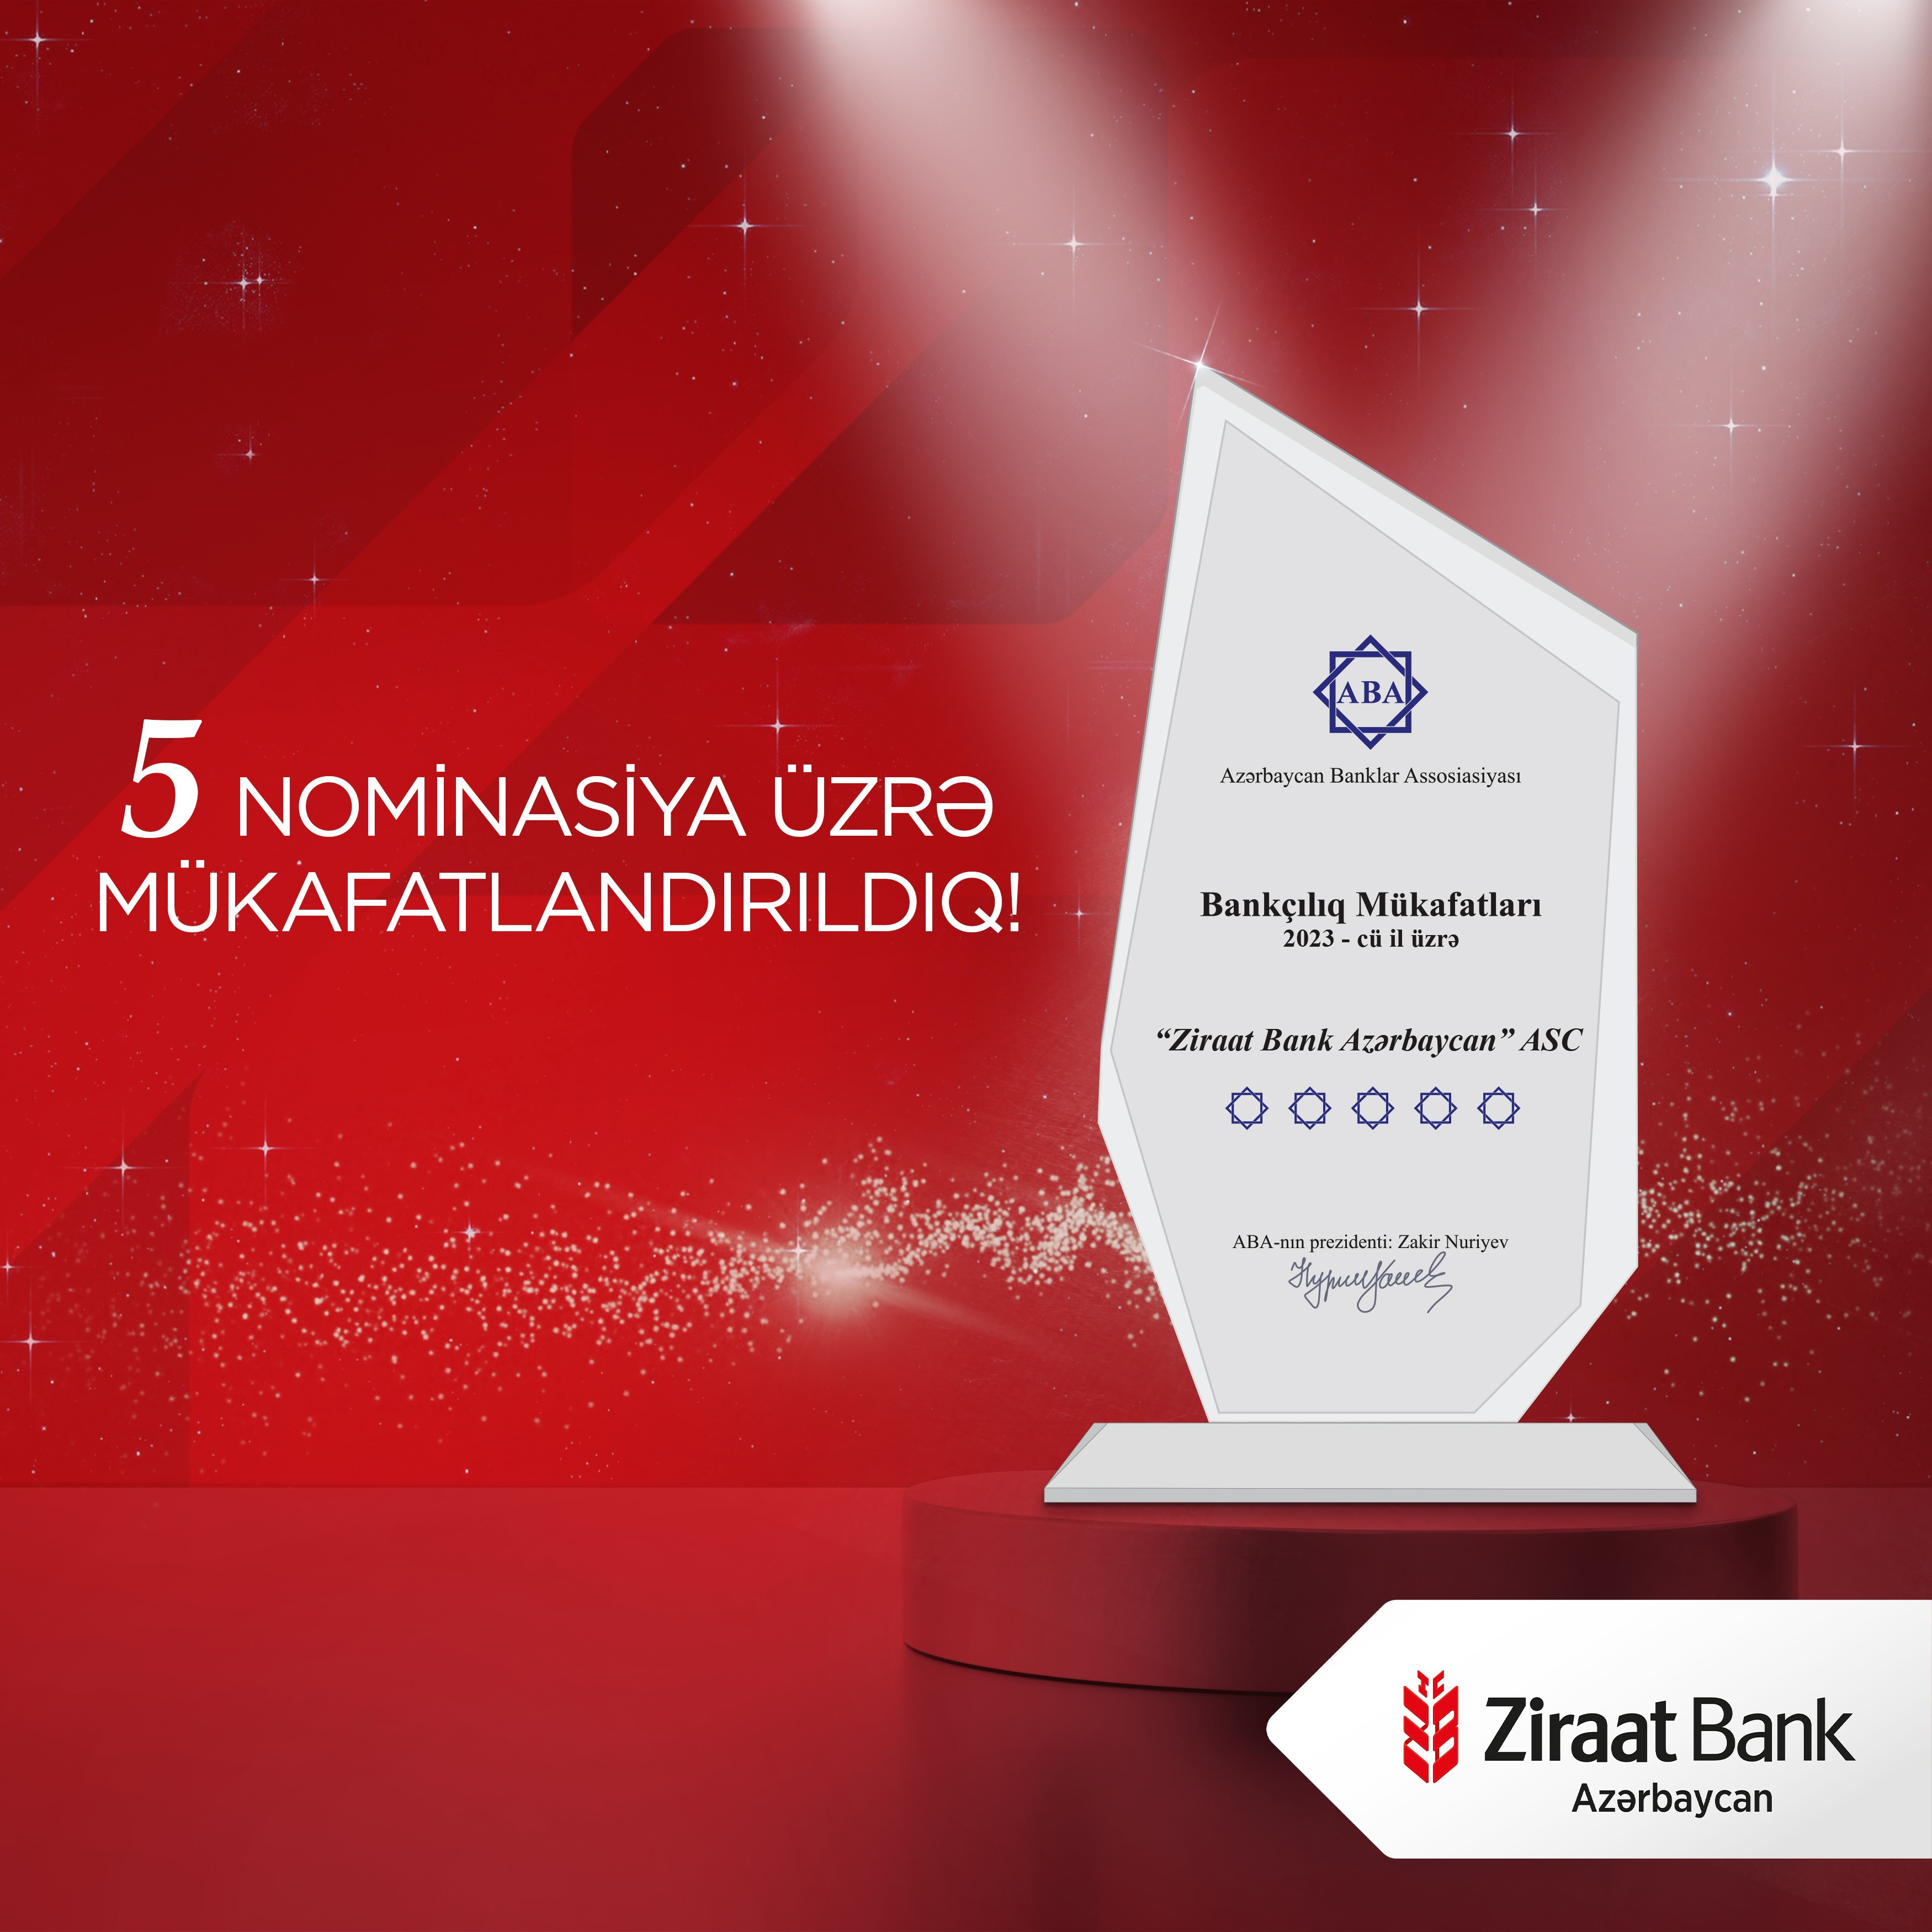 Ziraat Bank Azərbaycan ABA tərəfindən 5 nominasiya üzrə mükafatlandırılıb